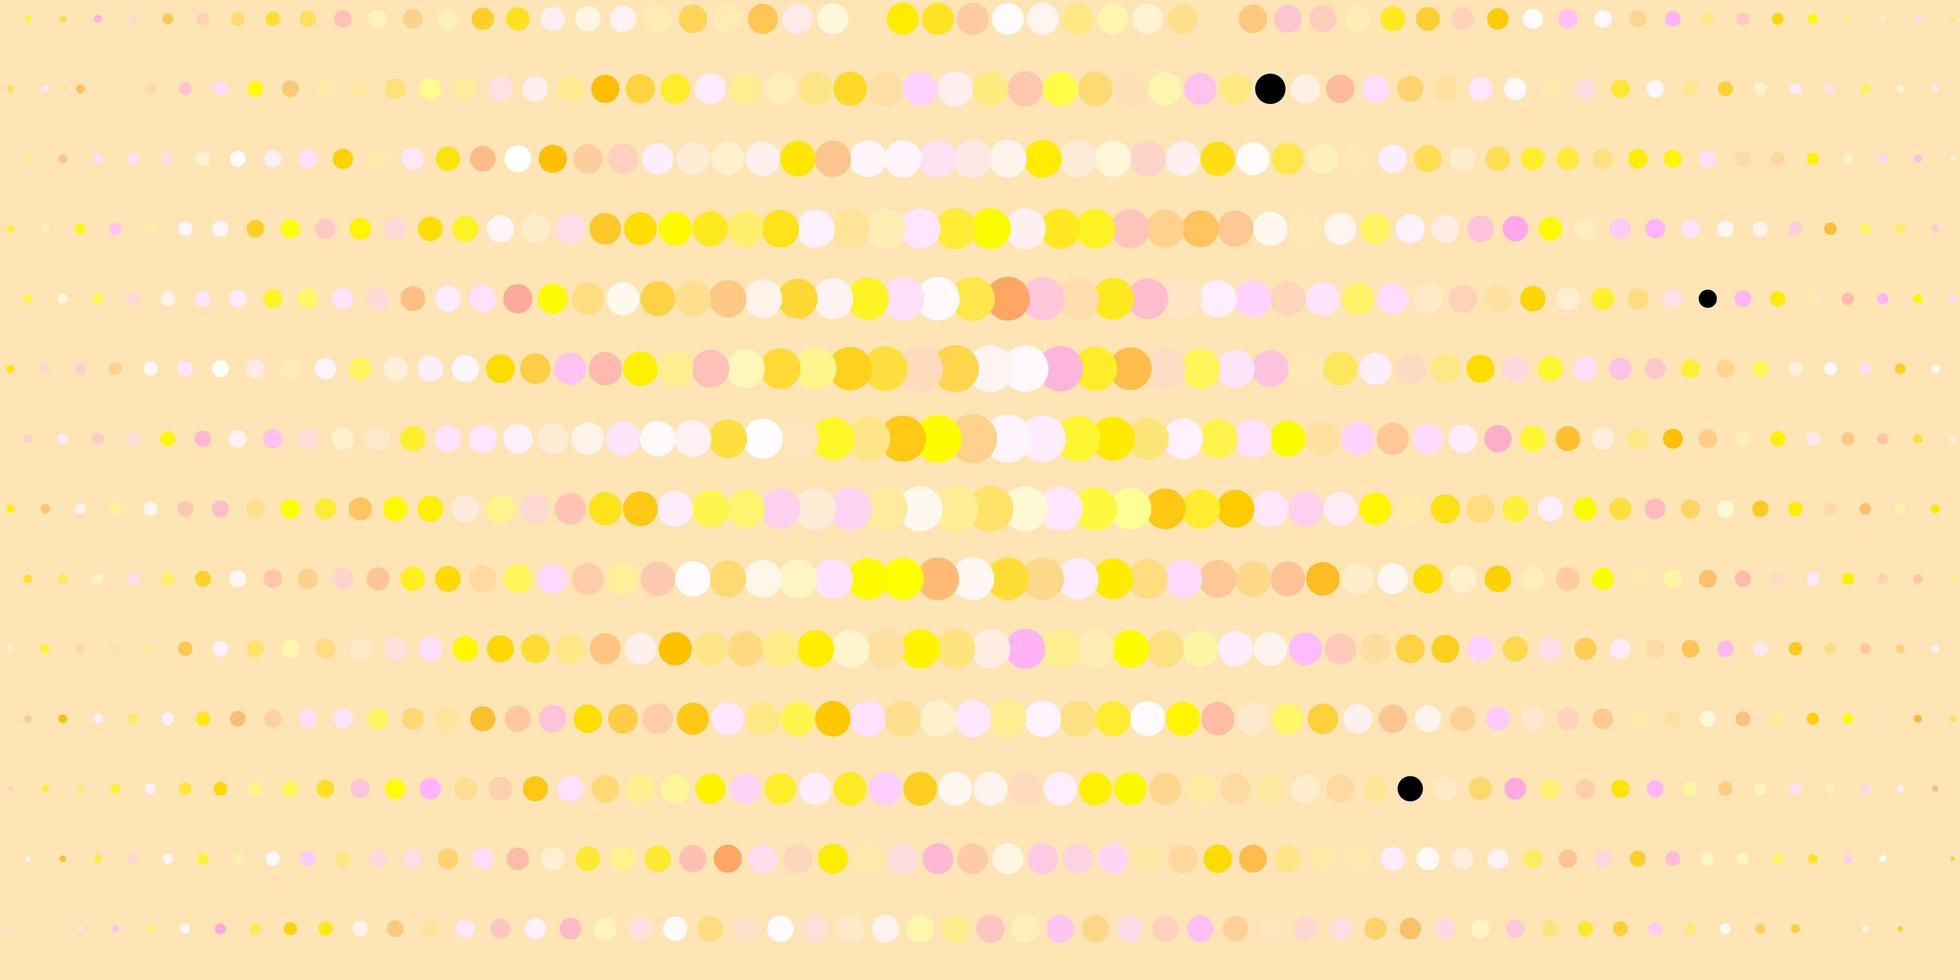 mörkrosa, gul vektorbakgrund med bubblor. vektor